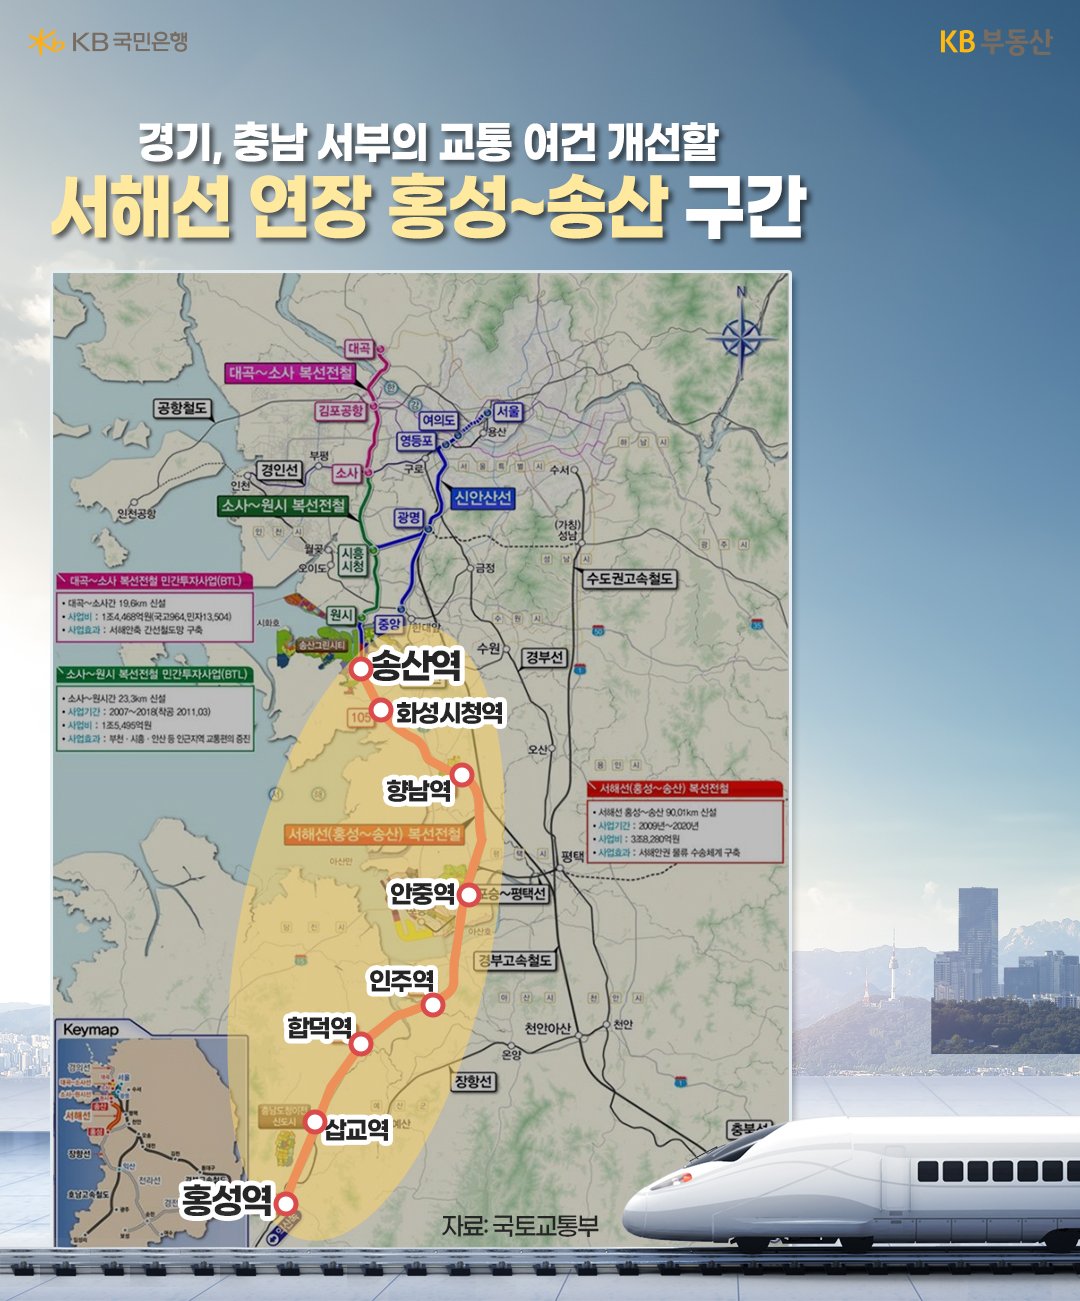 '서해선' '송산역'에서 '충남' '홍성역'을 잇는 90km 구간은 하반기 개통될 예정입니다. 서해선은 송산에서 원시 구간이 개통되지 않아 이미 운행 중인 고양시 일산역~소사역 구간까지 연결되지는 않습니다. 이 노선을 이용하면 홍성에서 서울까지 1시간 40분이면 닿게 됩니다.